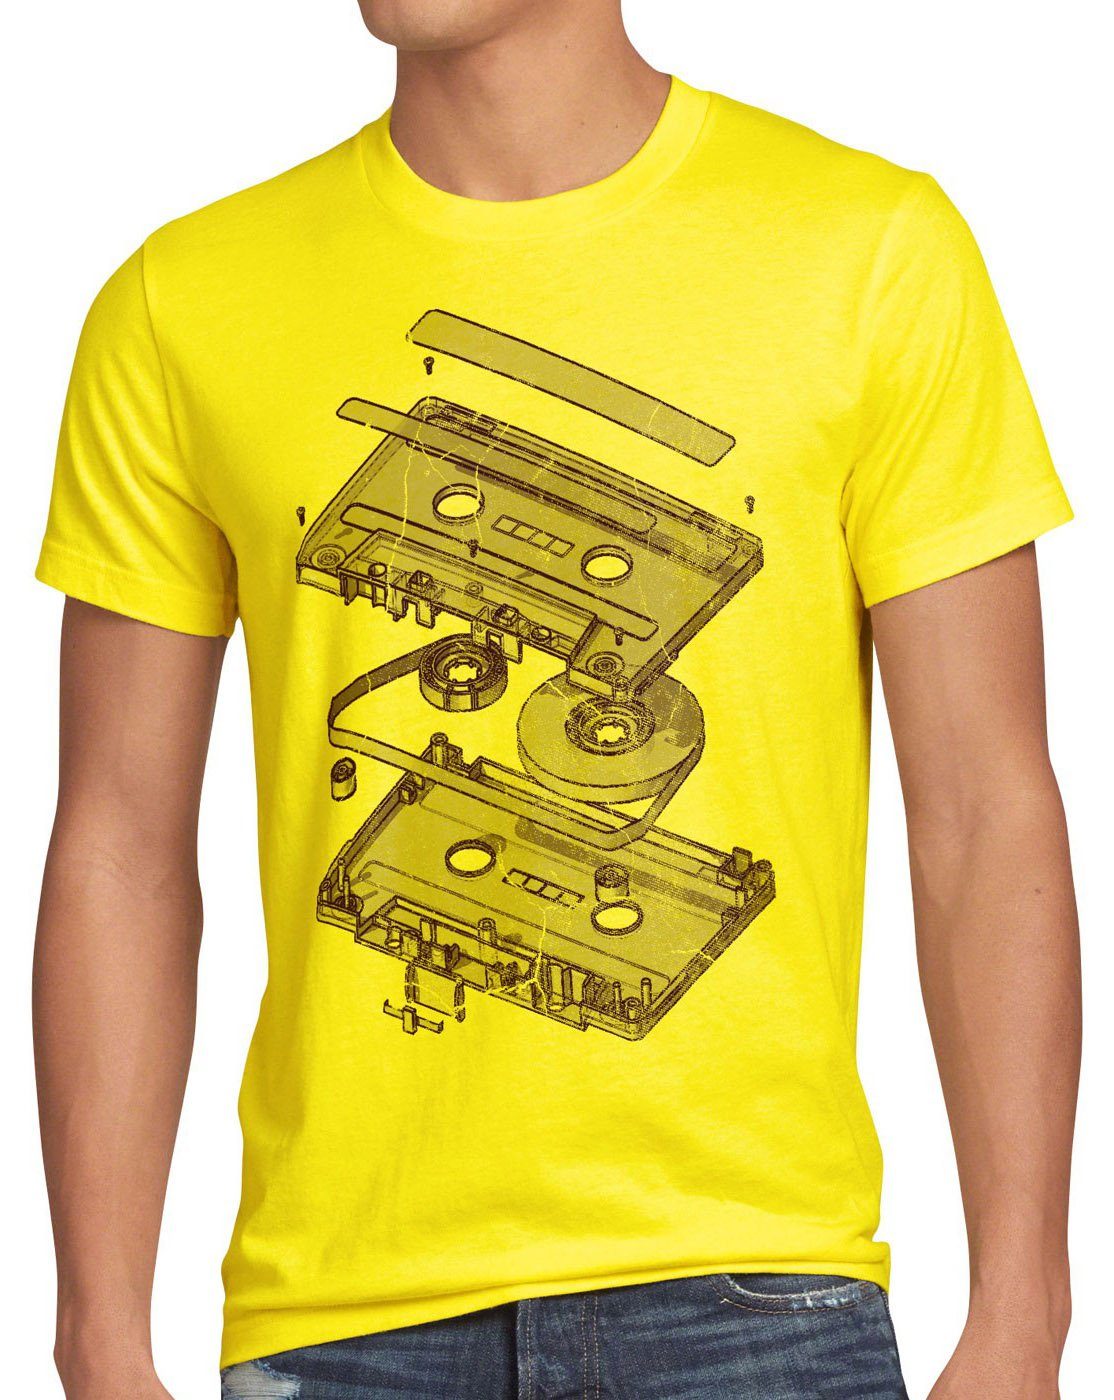 style3 Print-Shirt Herren T-Shirt Tape Kassette mc dj 3D turntable ndw analog disko cd 80er vinyl gelb